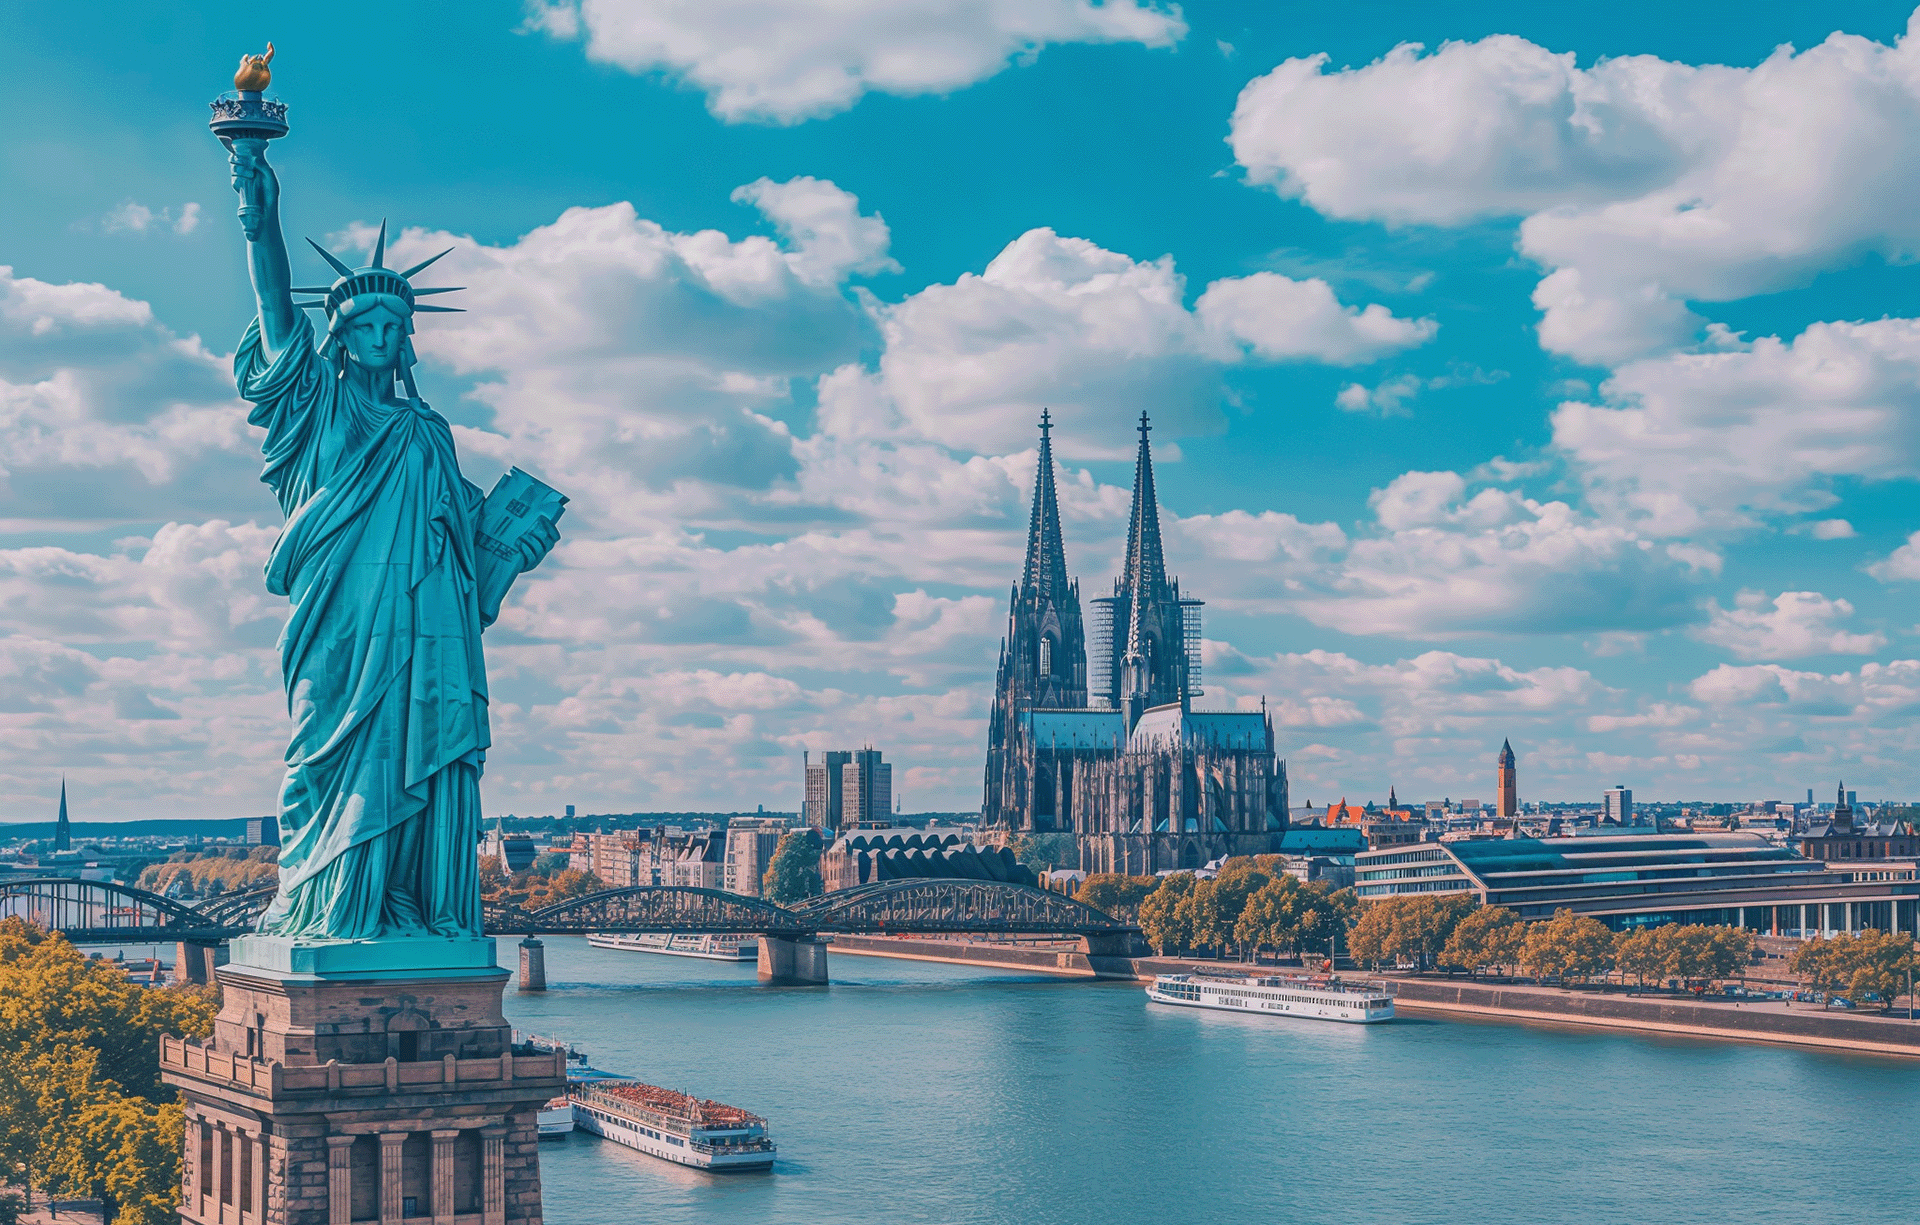 Auf der einen Seite steht die Freiheitsstatue am Ufer, davor der Kölner Dom und dahinter sieht man einen blauen Himmel mit weißen Wolken, und darunter liegt der Rhein. Das Foto wurde von oben aufgenommen. Es ist ein sonniger Tag mit warmem Licht.